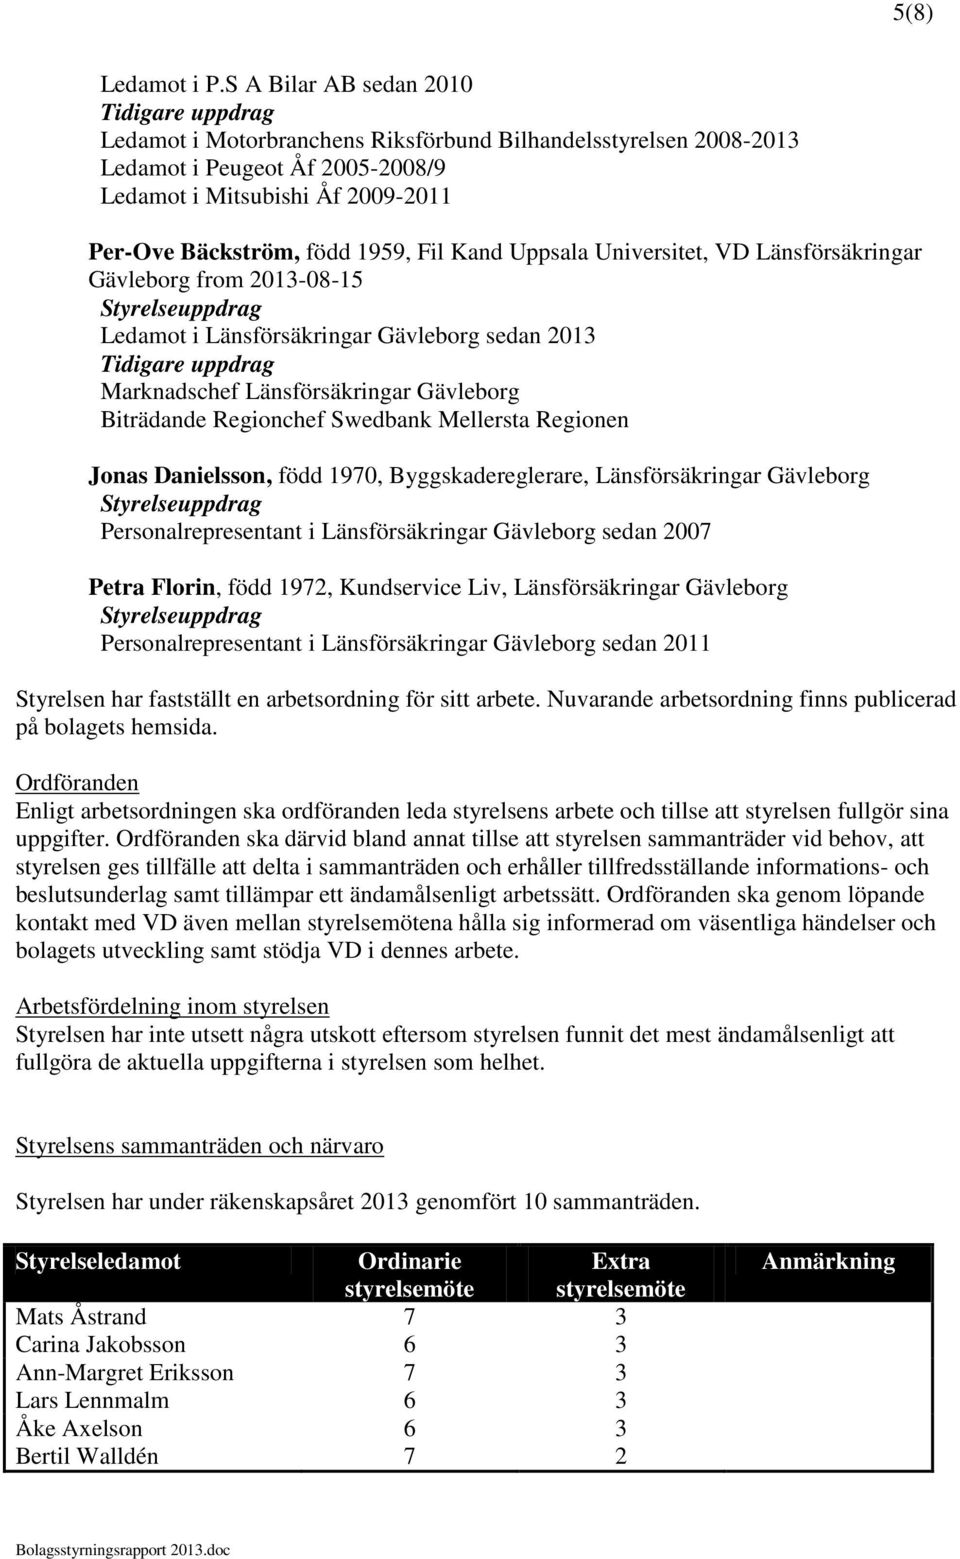 Uppsala Universitet, VD Länsförsäkringar Gävleborg from 2013-08-15 Ledamot i Länsförsäkringar Gävleborg sedan 2013 Marknadschef Länsförsäkringar Gävleborg Biträdande Regionchef Swedbank Mellersta